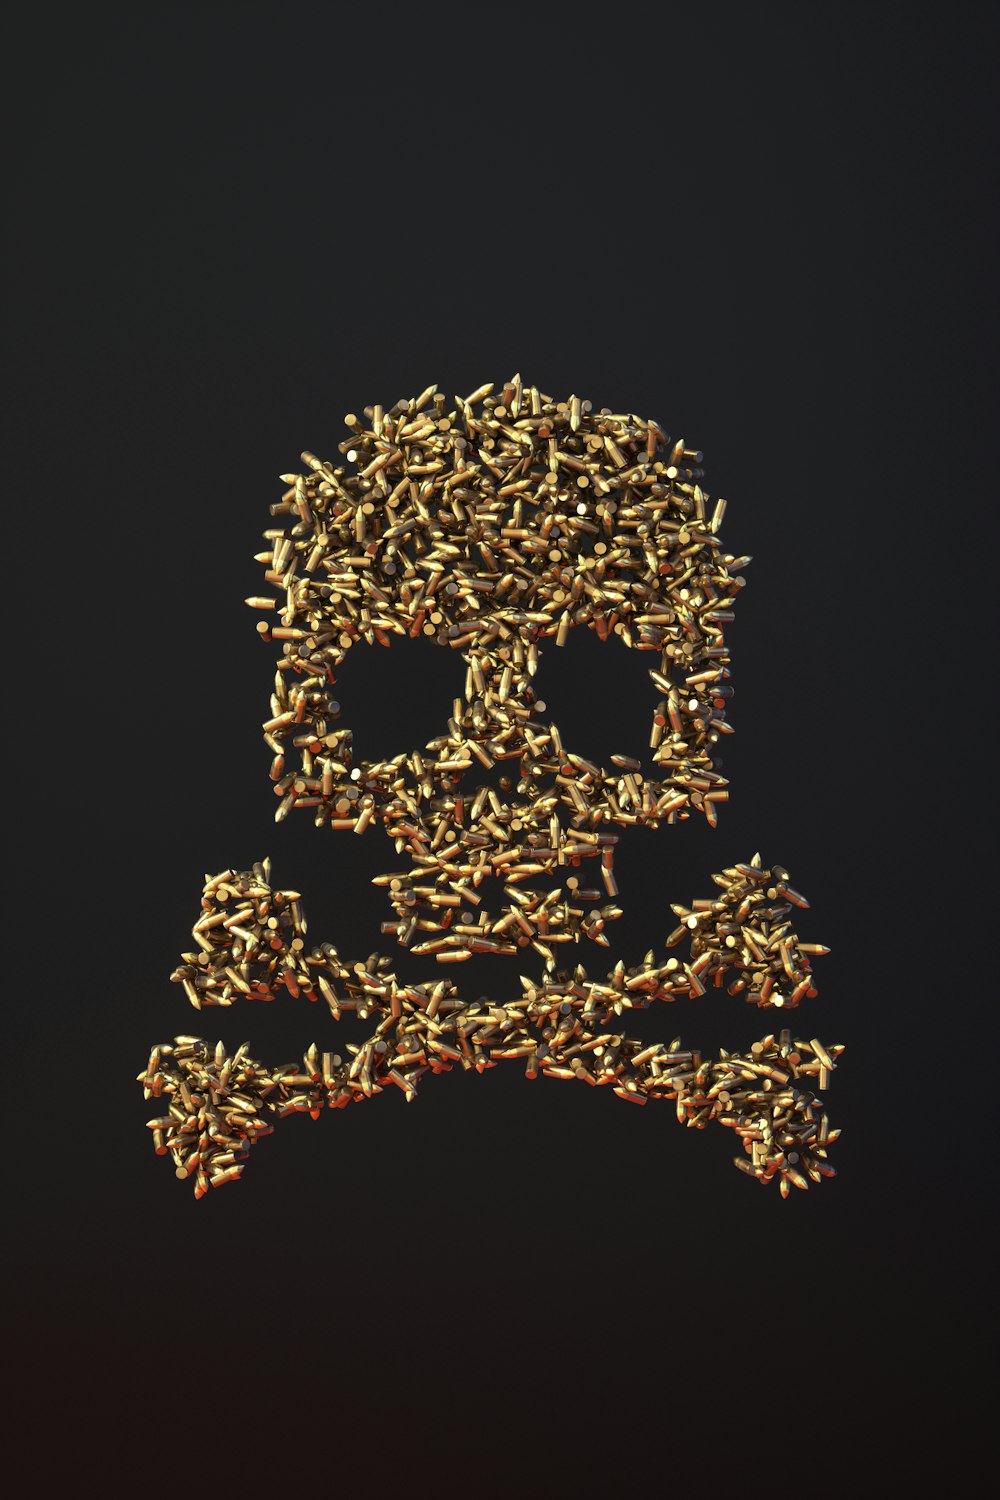 Una imagen de un cráneo hecho de pequeños objetos